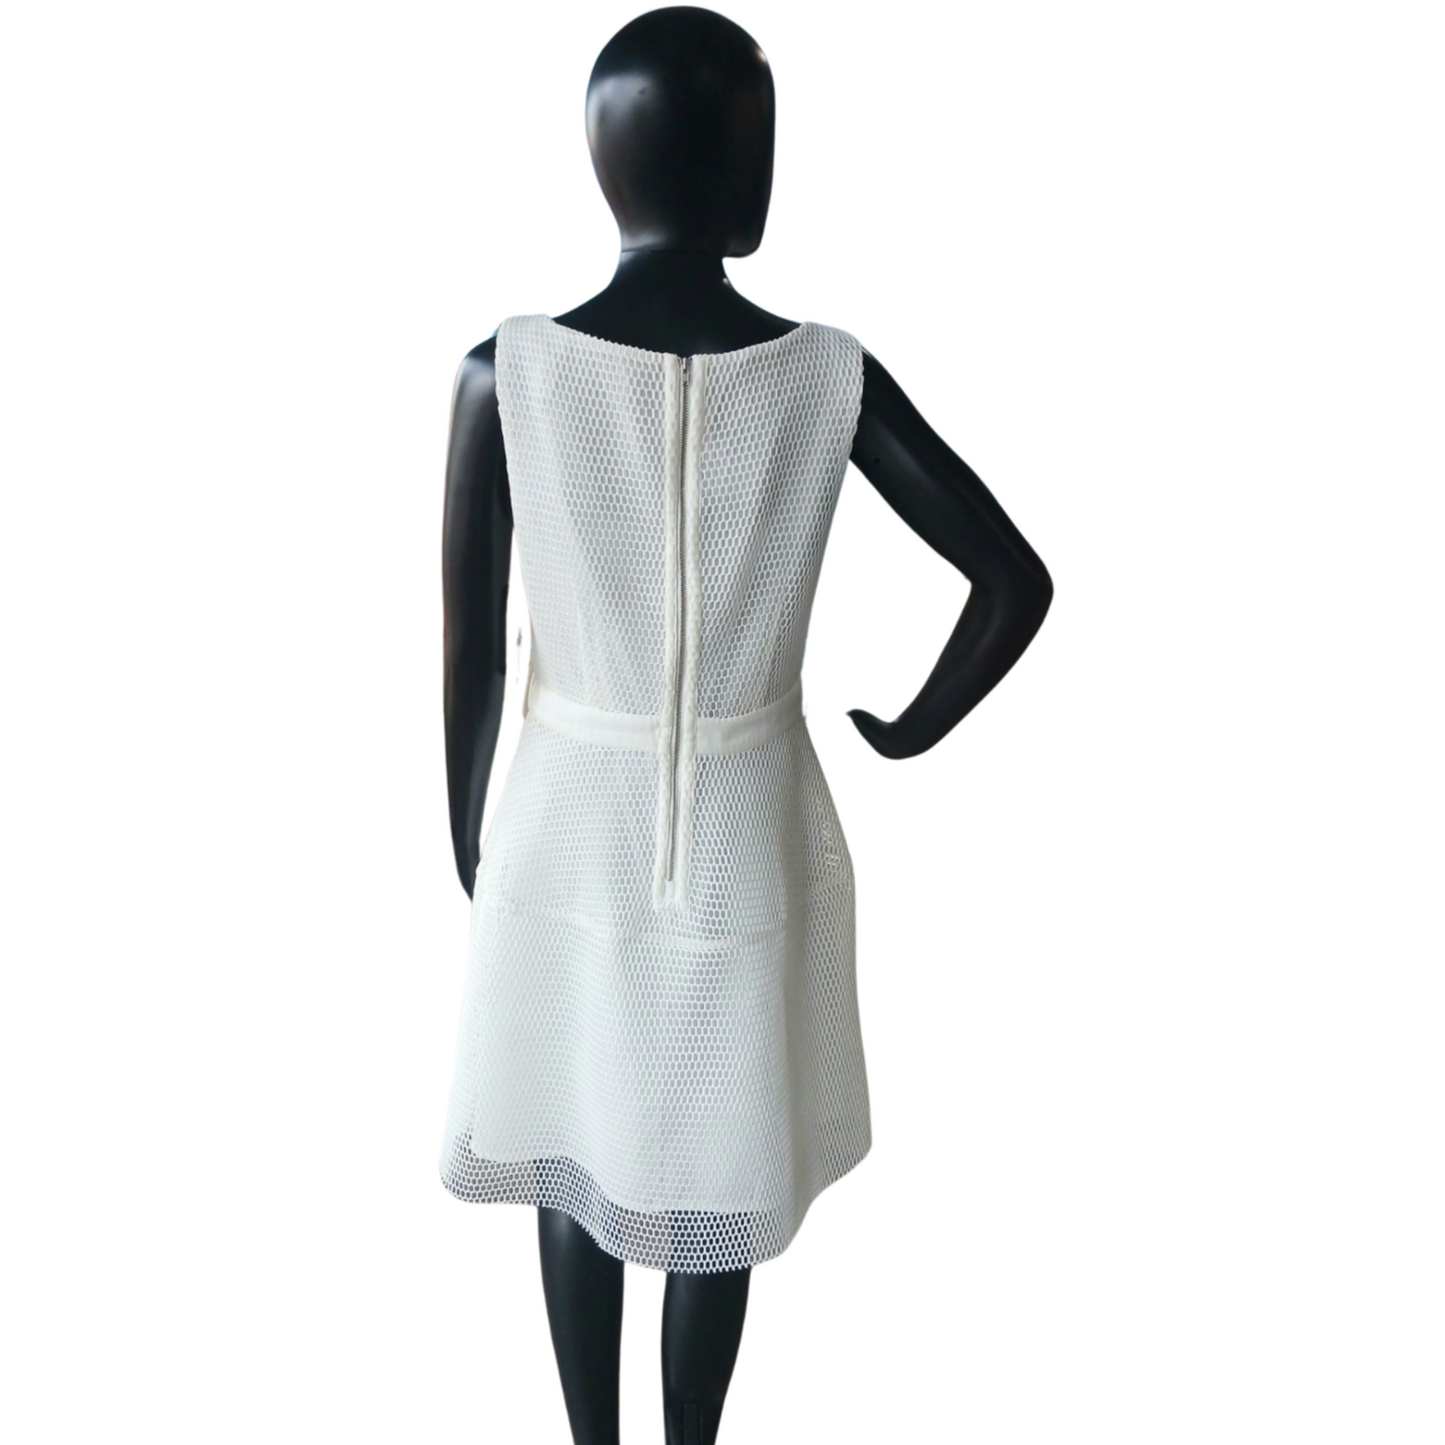 Worthington White Lined Net Dress, Size 8